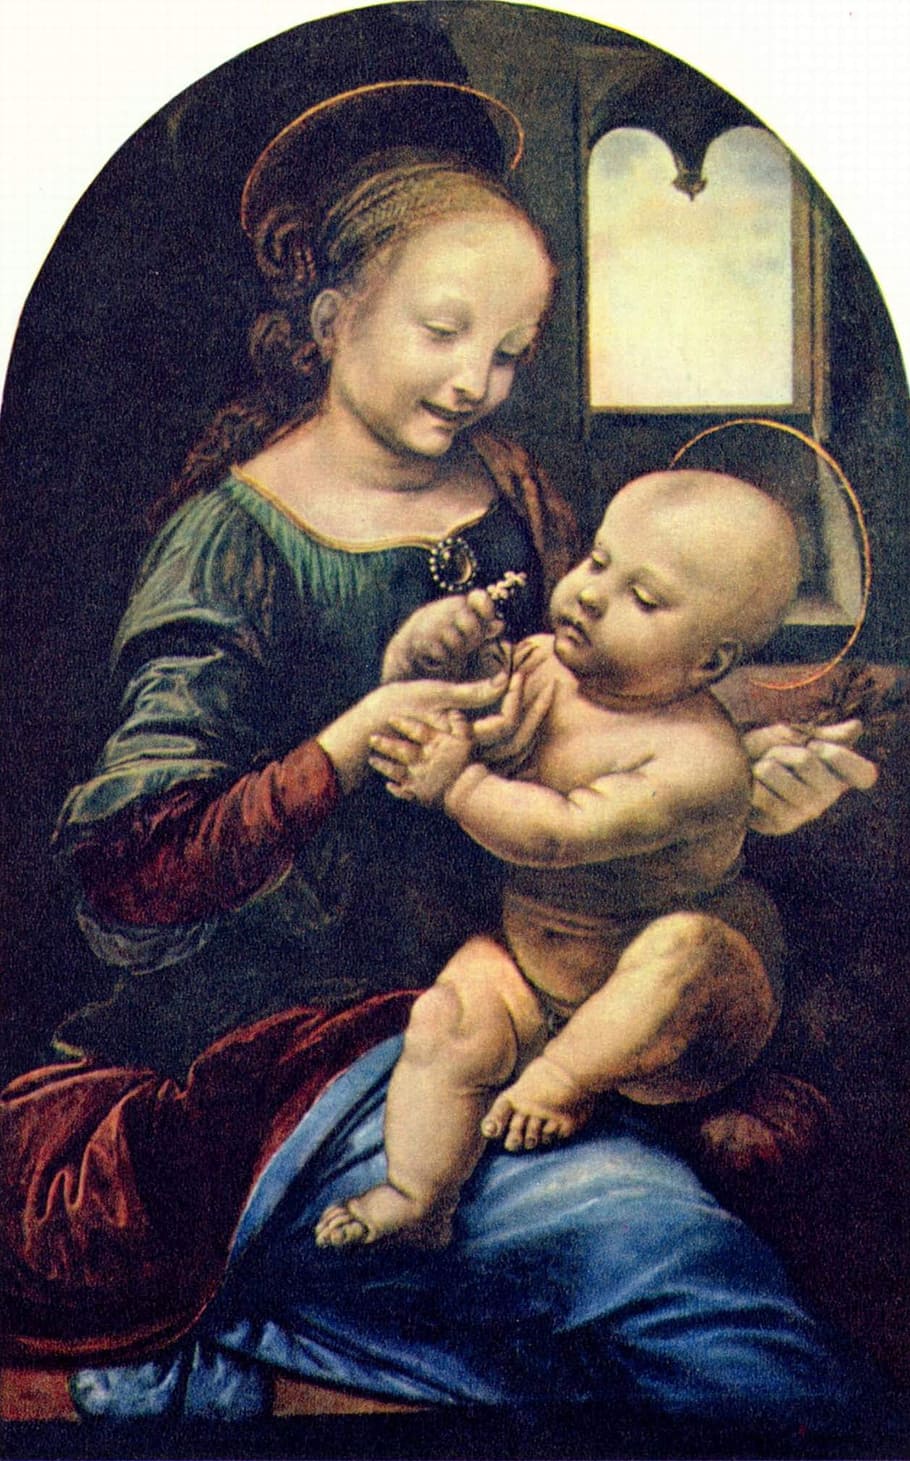 pintura religiosa, a virgem e o filho, leonardo de vinci, caldeira e jesus, 1478-1482, óleo sobre madeira, pintura de juventude leonardo, mãe e filho, emoção, cristo